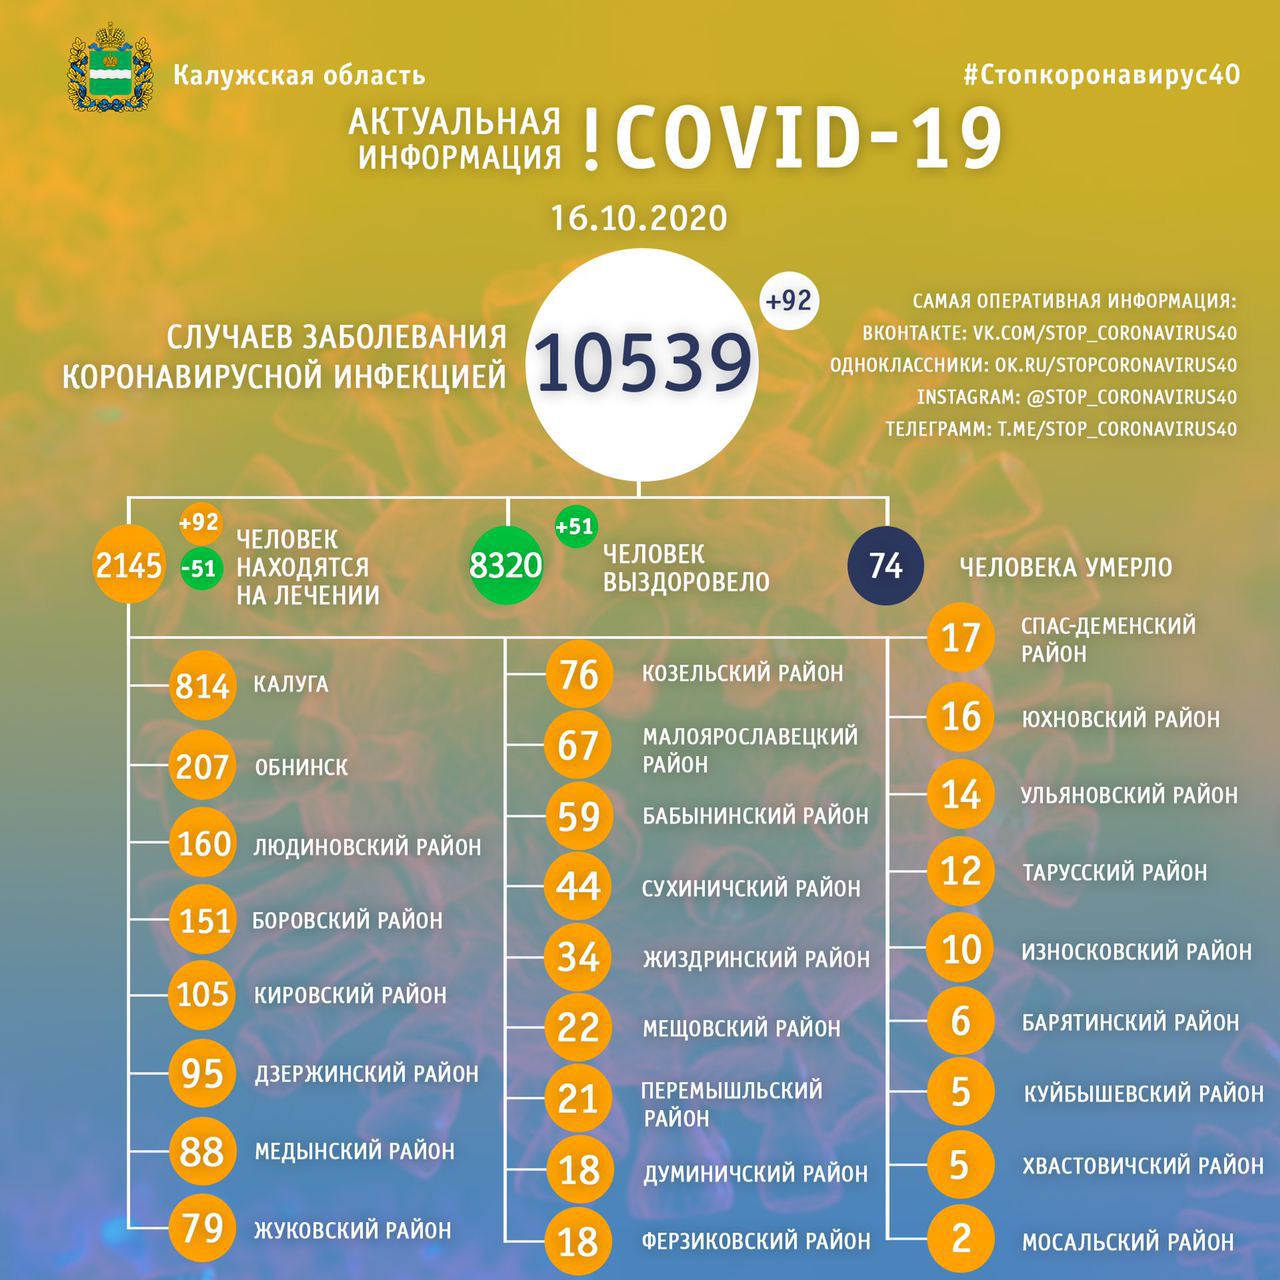 Официальная статистика по коронавирусу в Калужской области на 16 октября 2020 года.